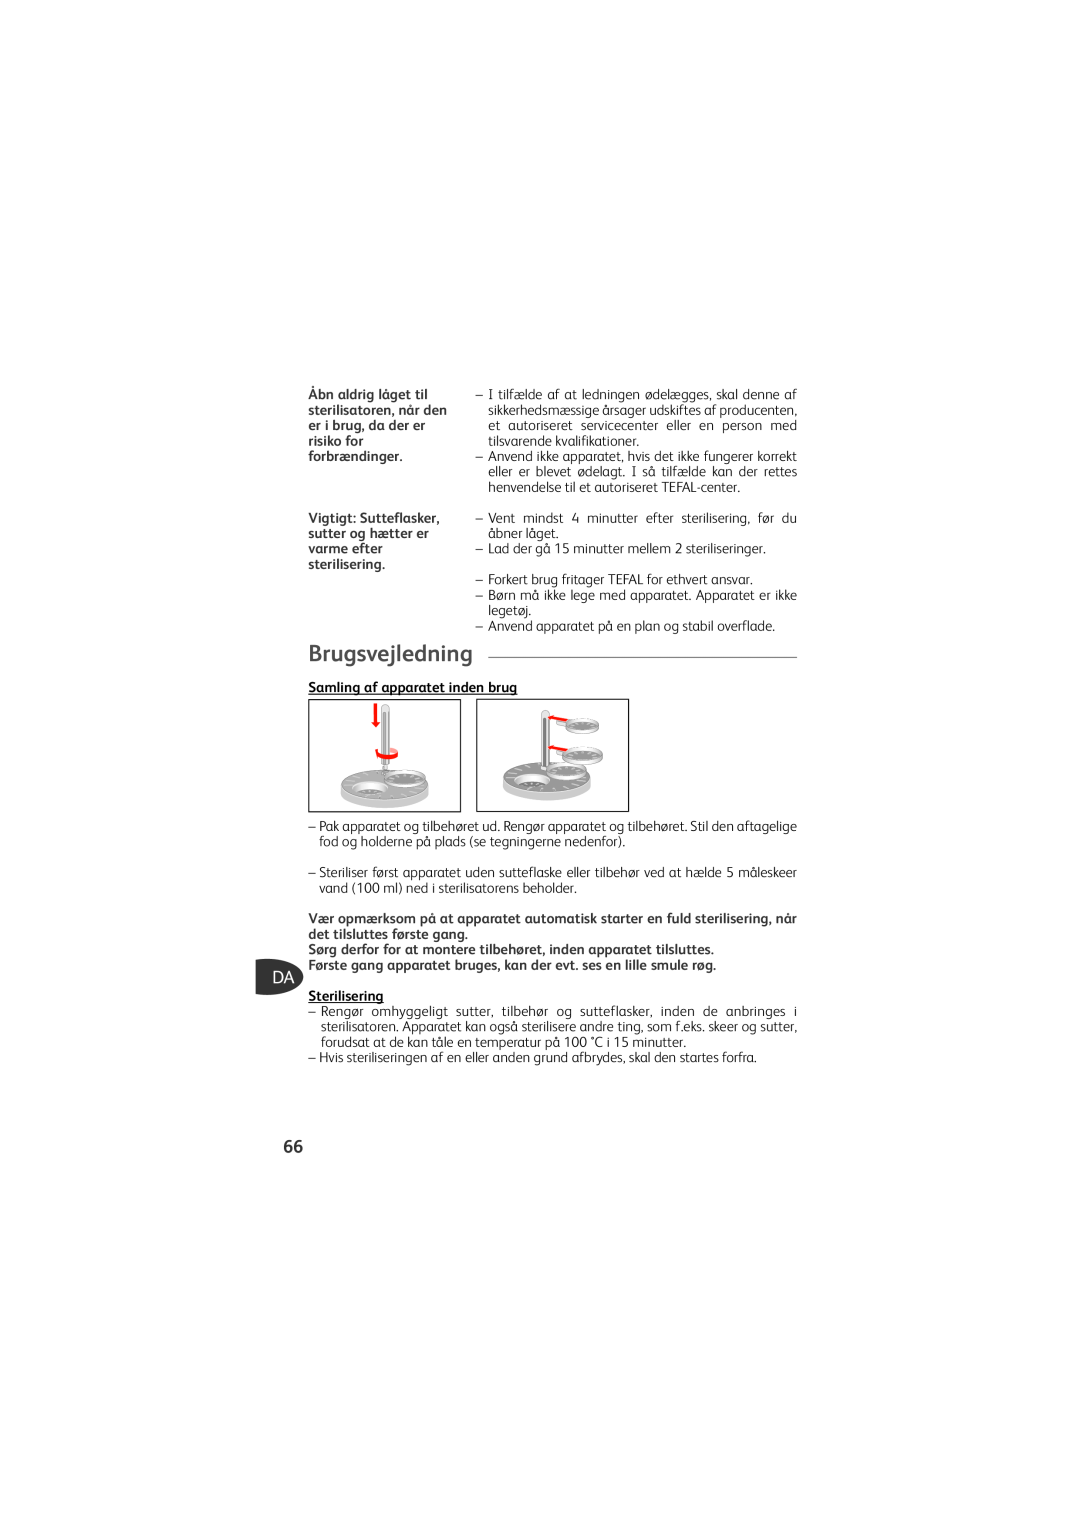 Tefal TD4200K0 manual Brugsvejledning, Samling af apparatet inden brug, Sterilisering 